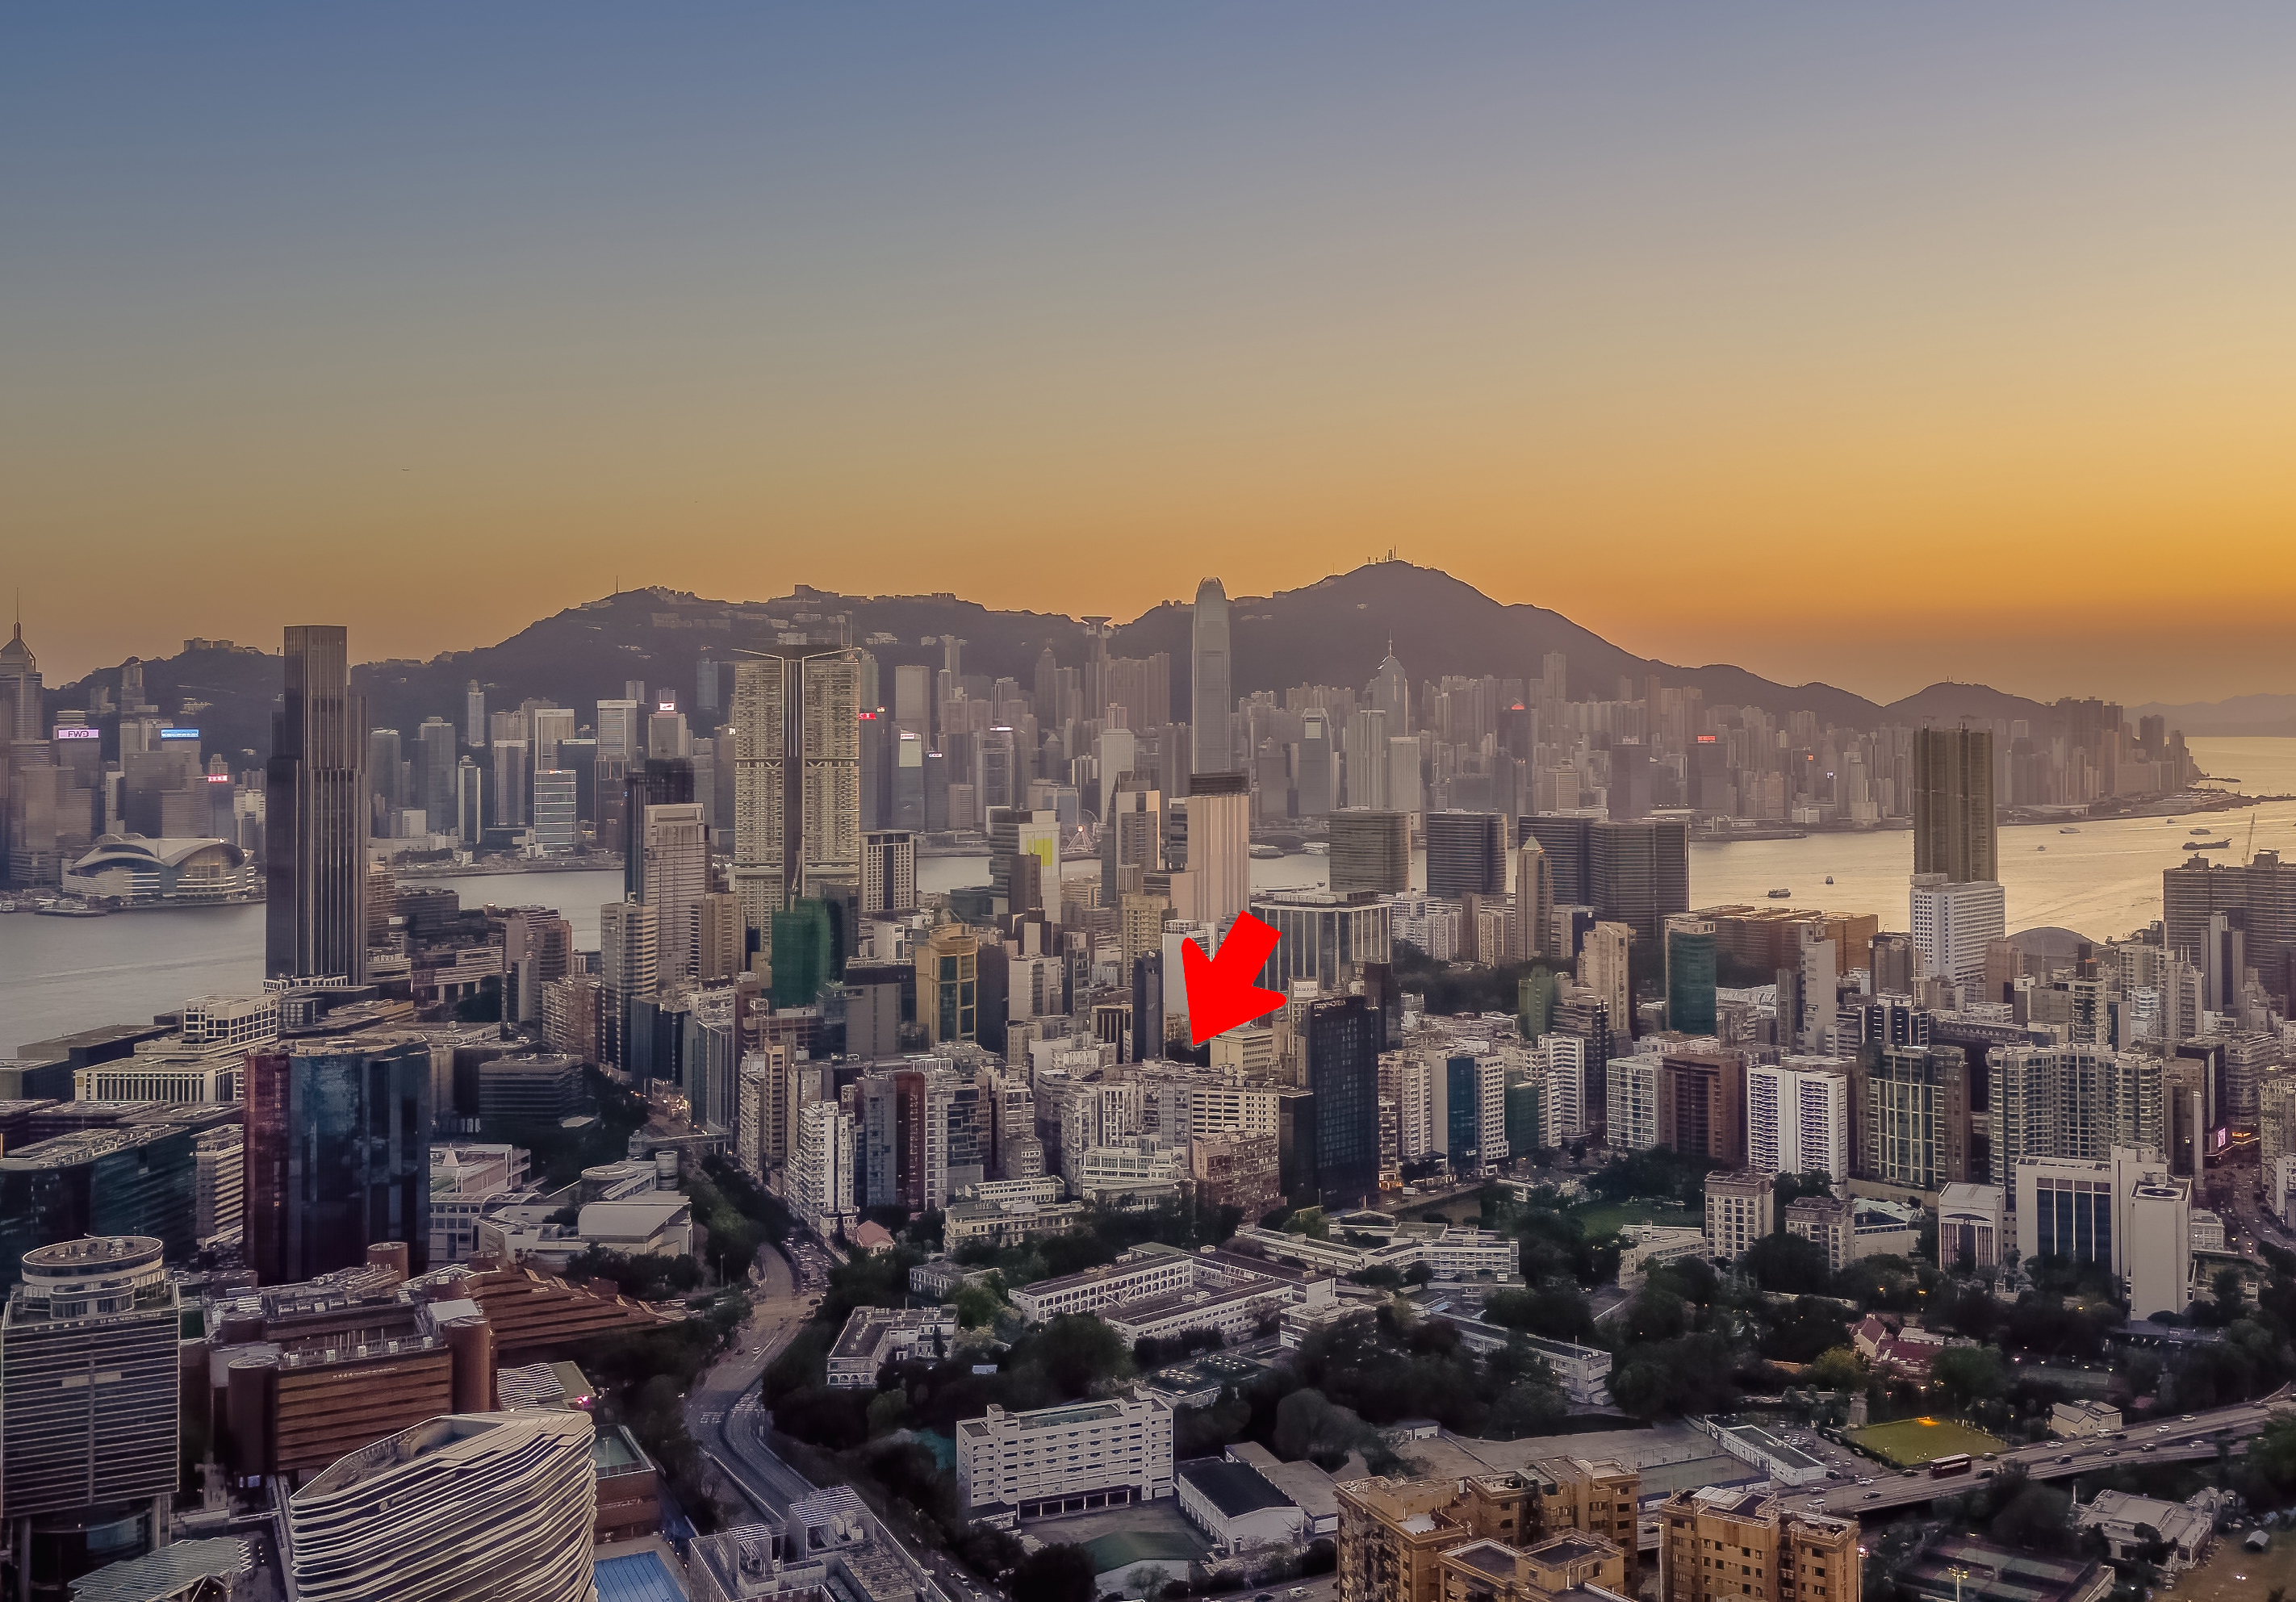 現在的「天文台山」已被四周的高大樓大廈所包圍（見紅色箭咀）。（圖片來源：Shutterstock） 